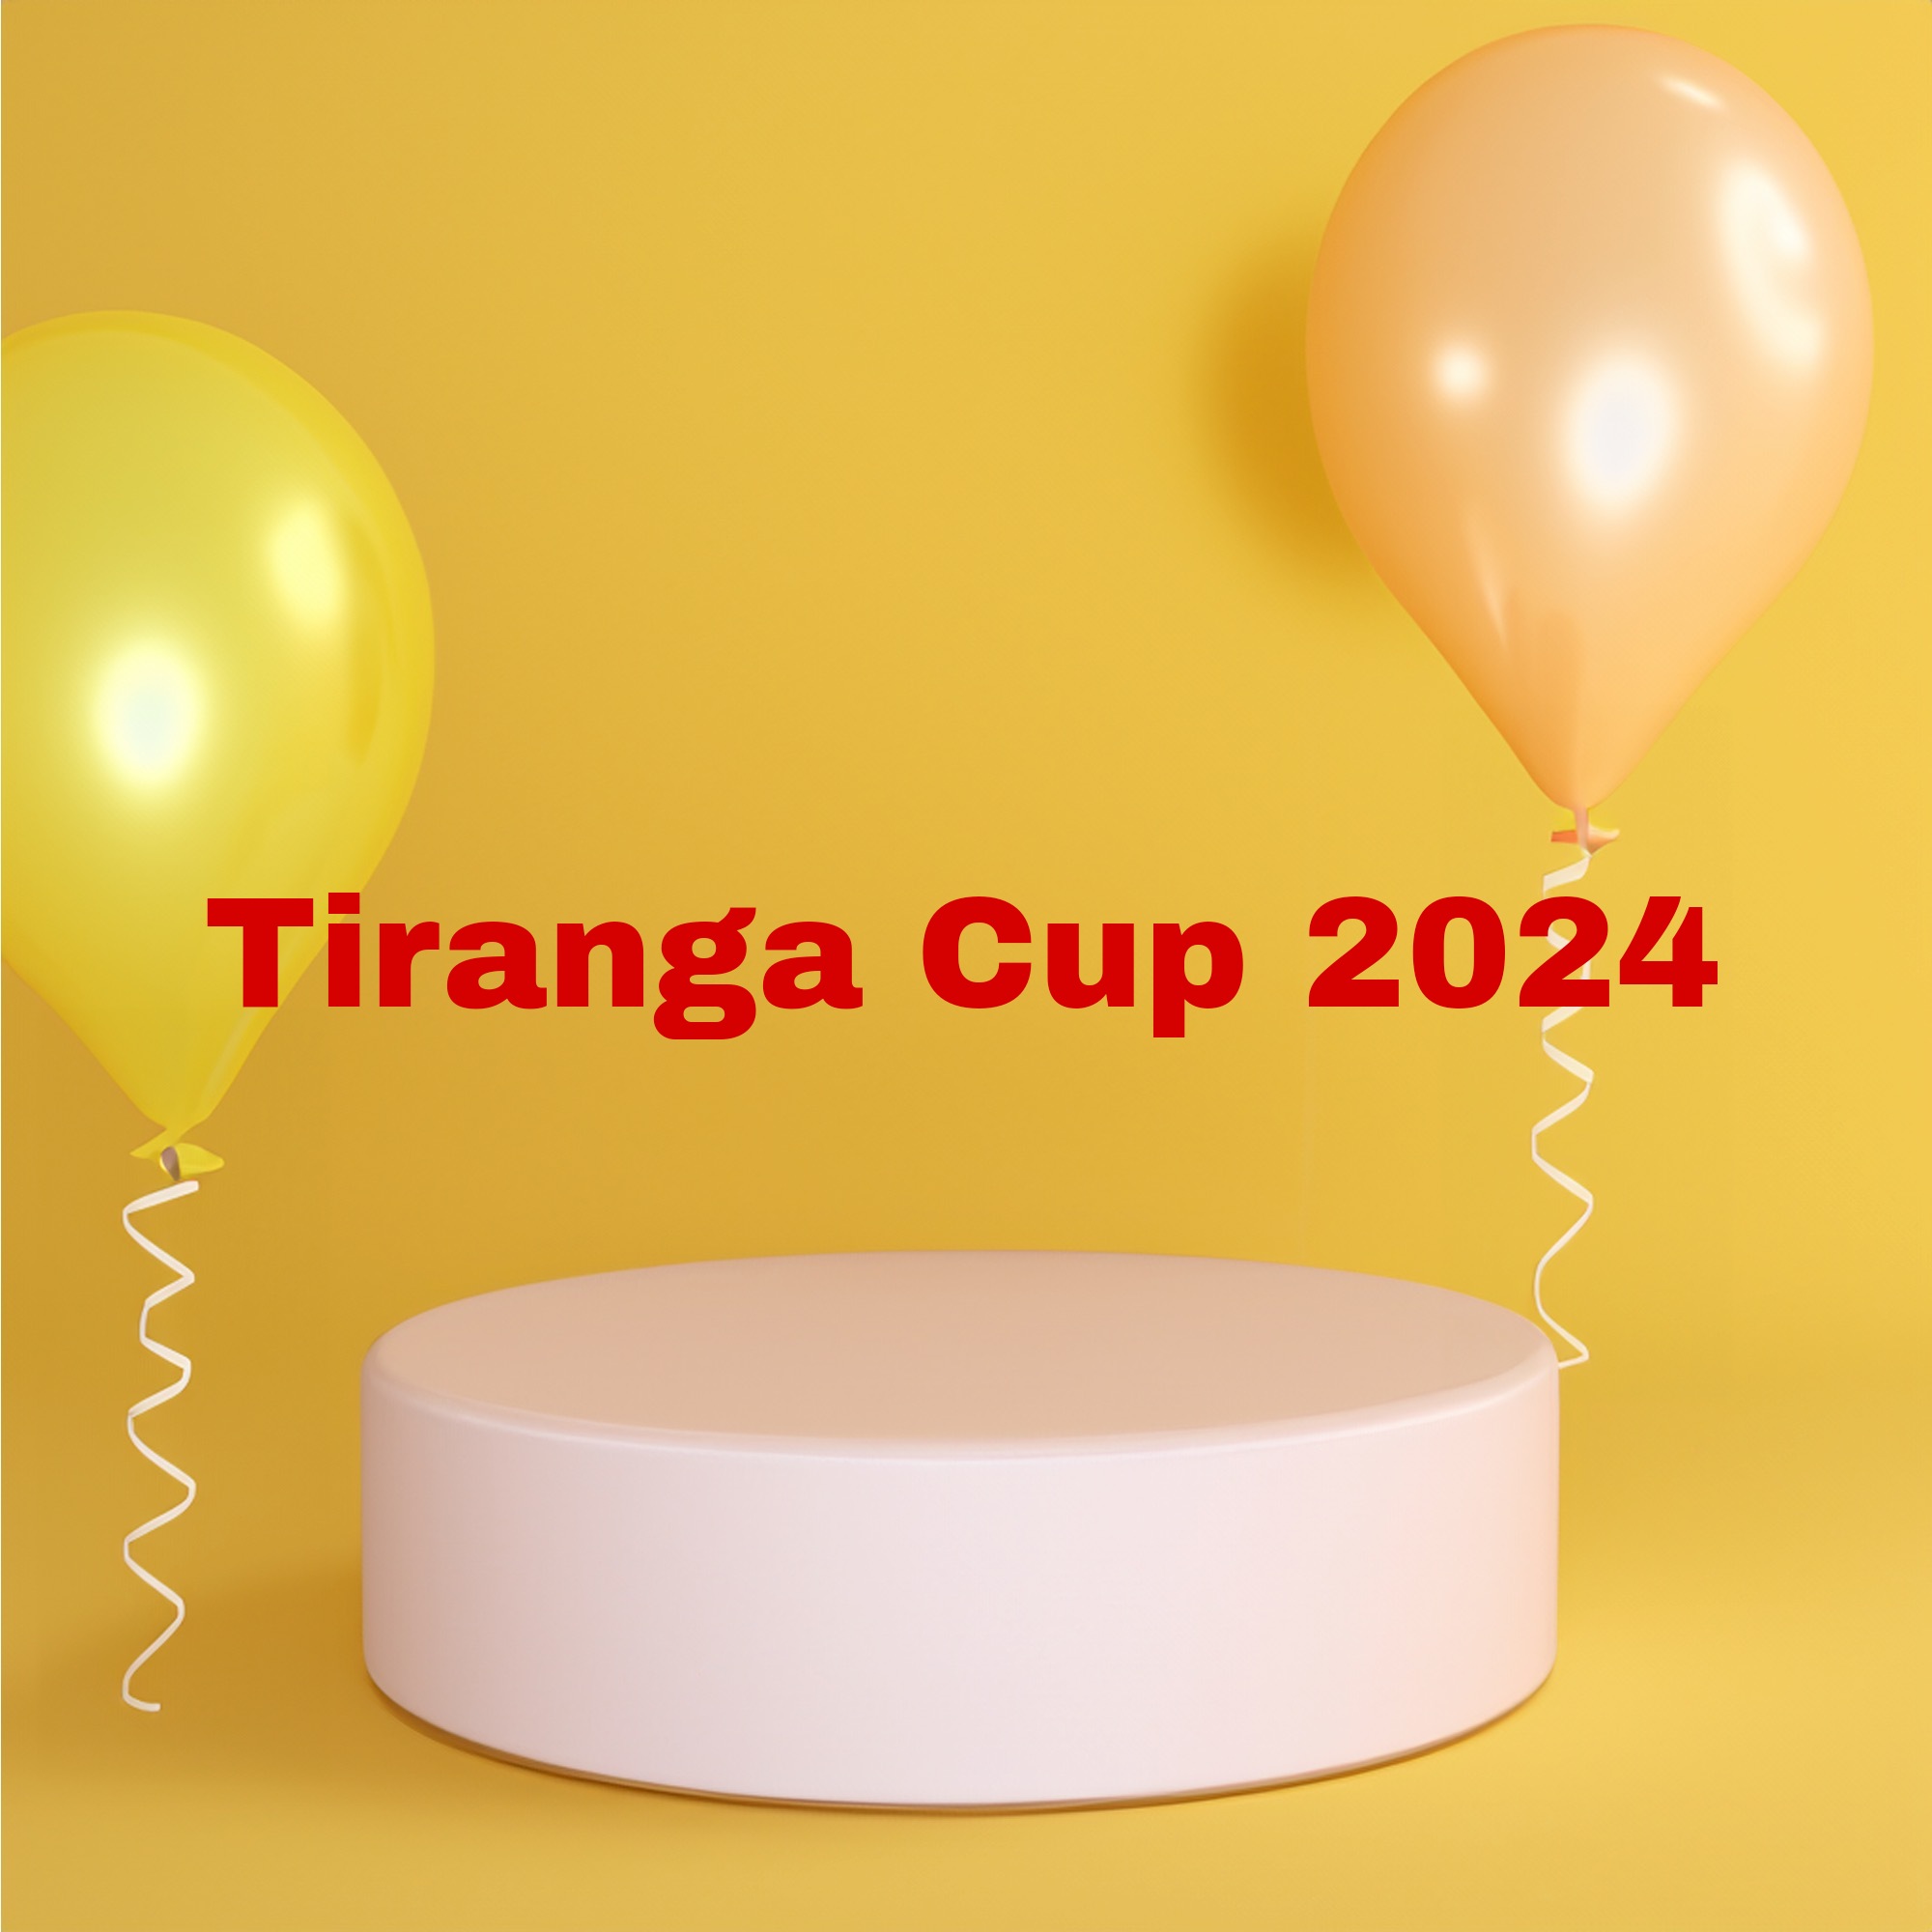 Tiranga Cup Night 